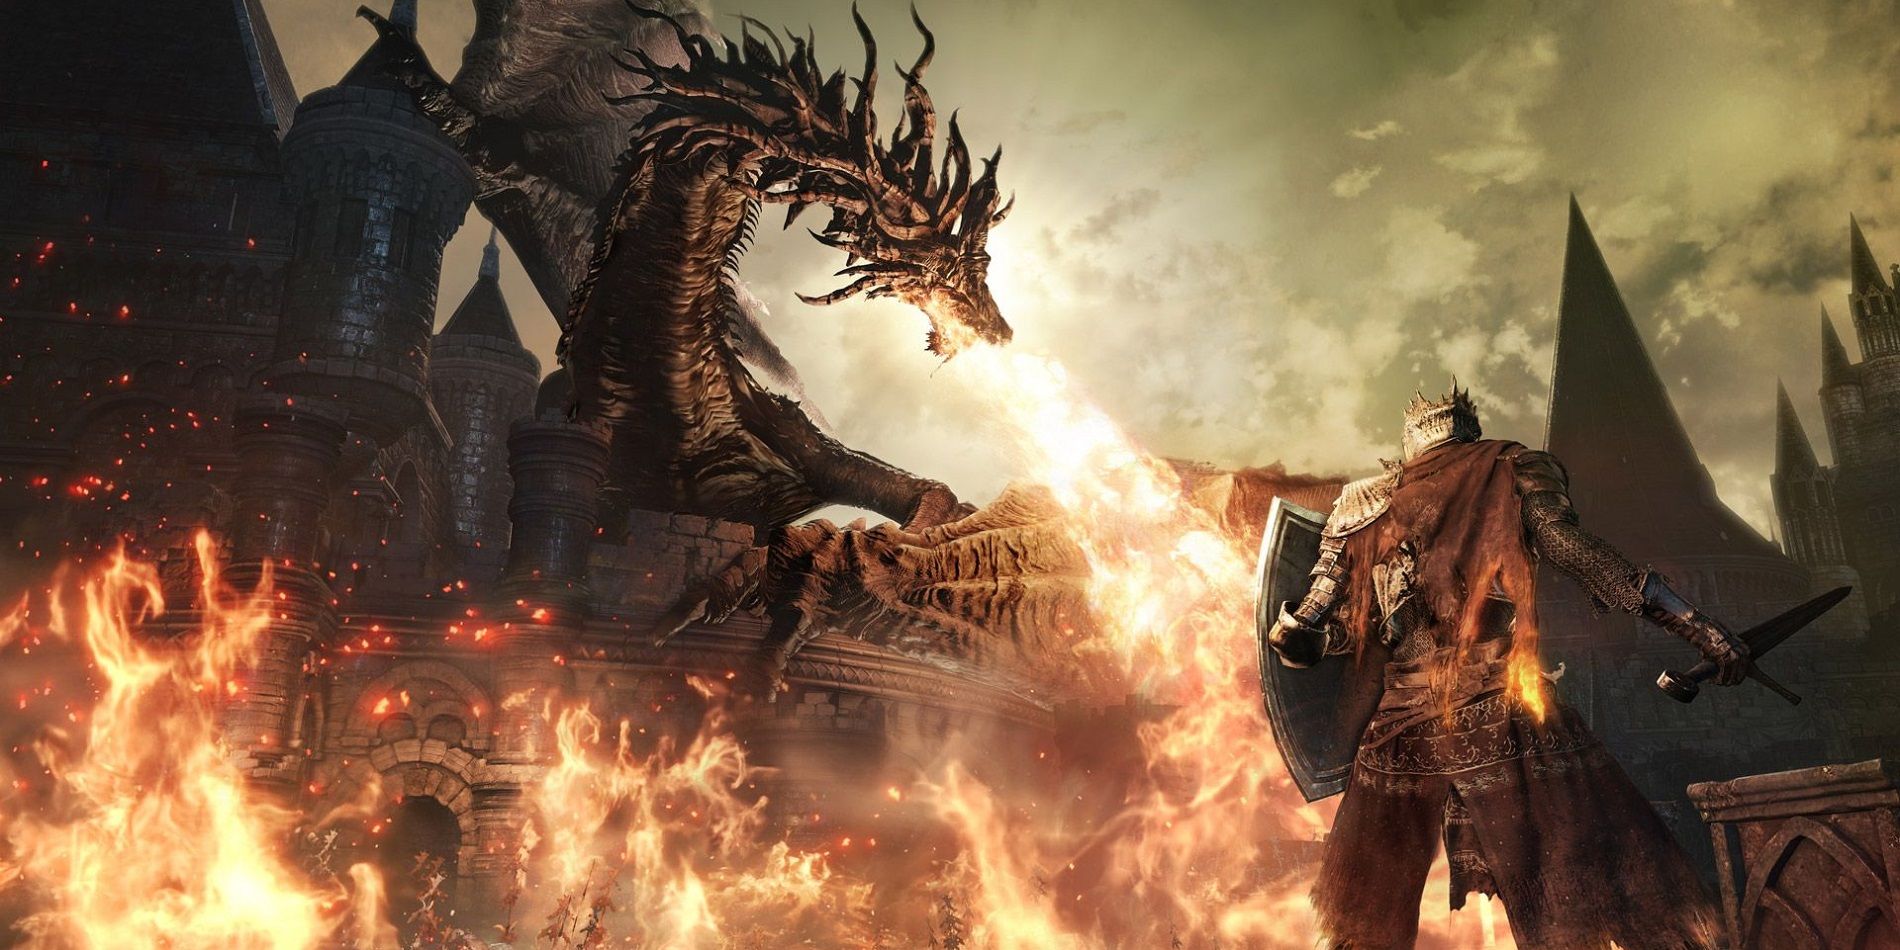 A dragon breathing fire on houses in Dark Souls III